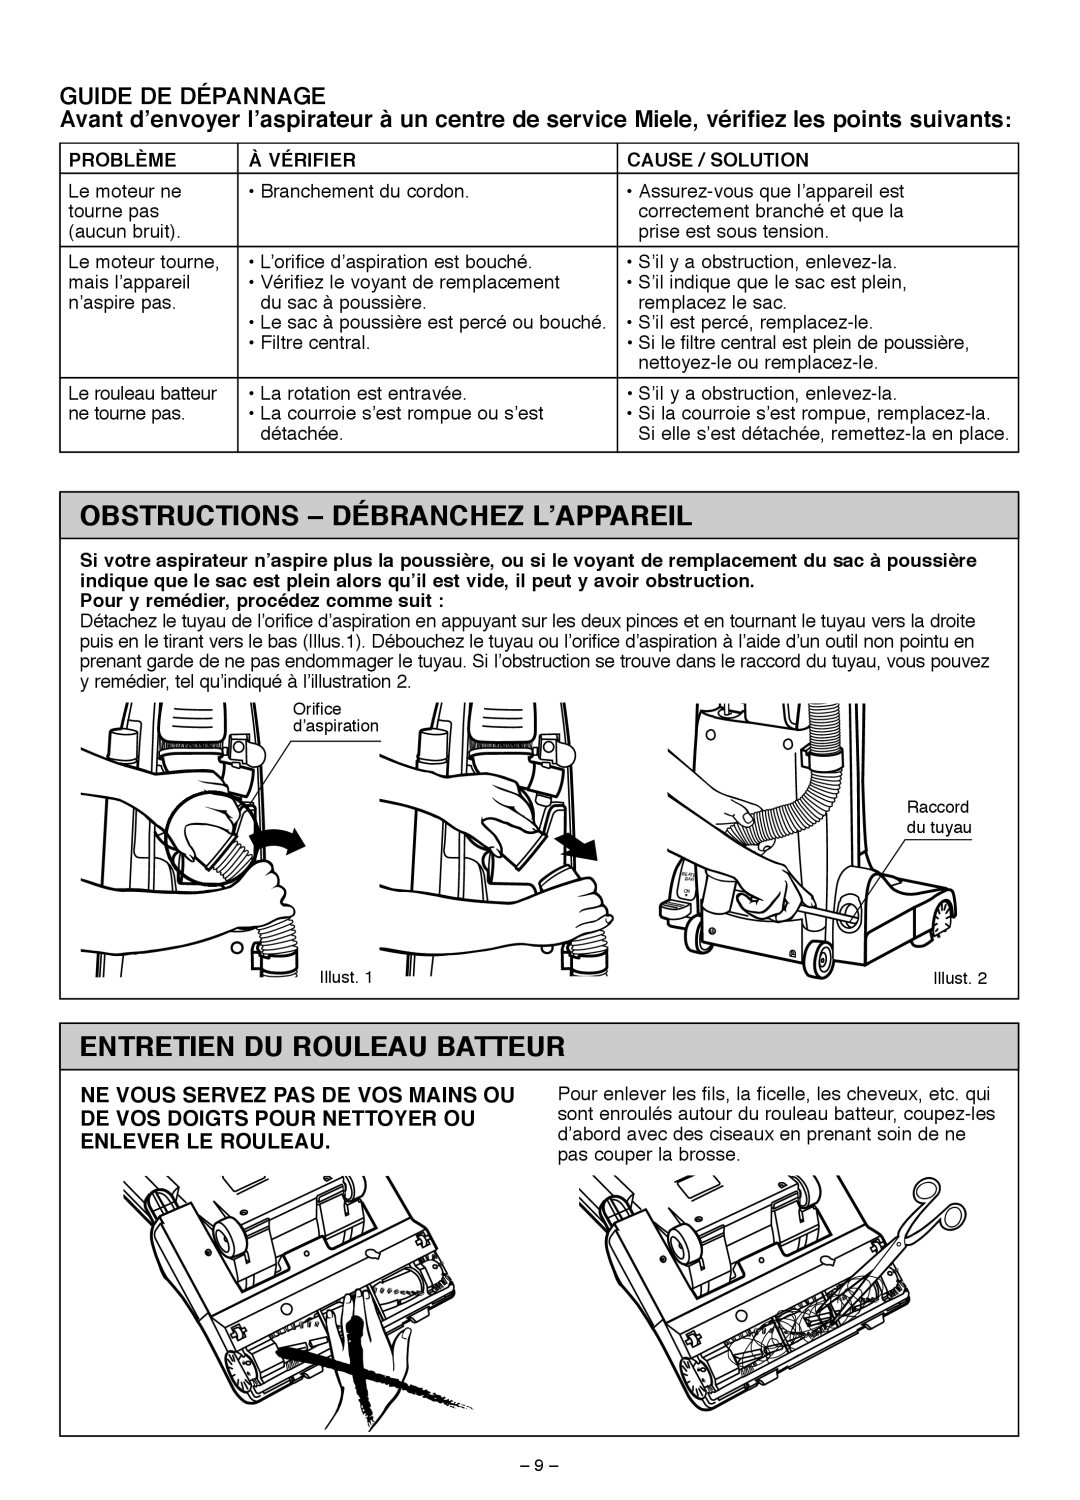 Miele S185 Obstructions - Débranchez L’Appareil, Entretien Du Rouleau Batteur, Guide De Dépannage, Problème, À Vérifier 